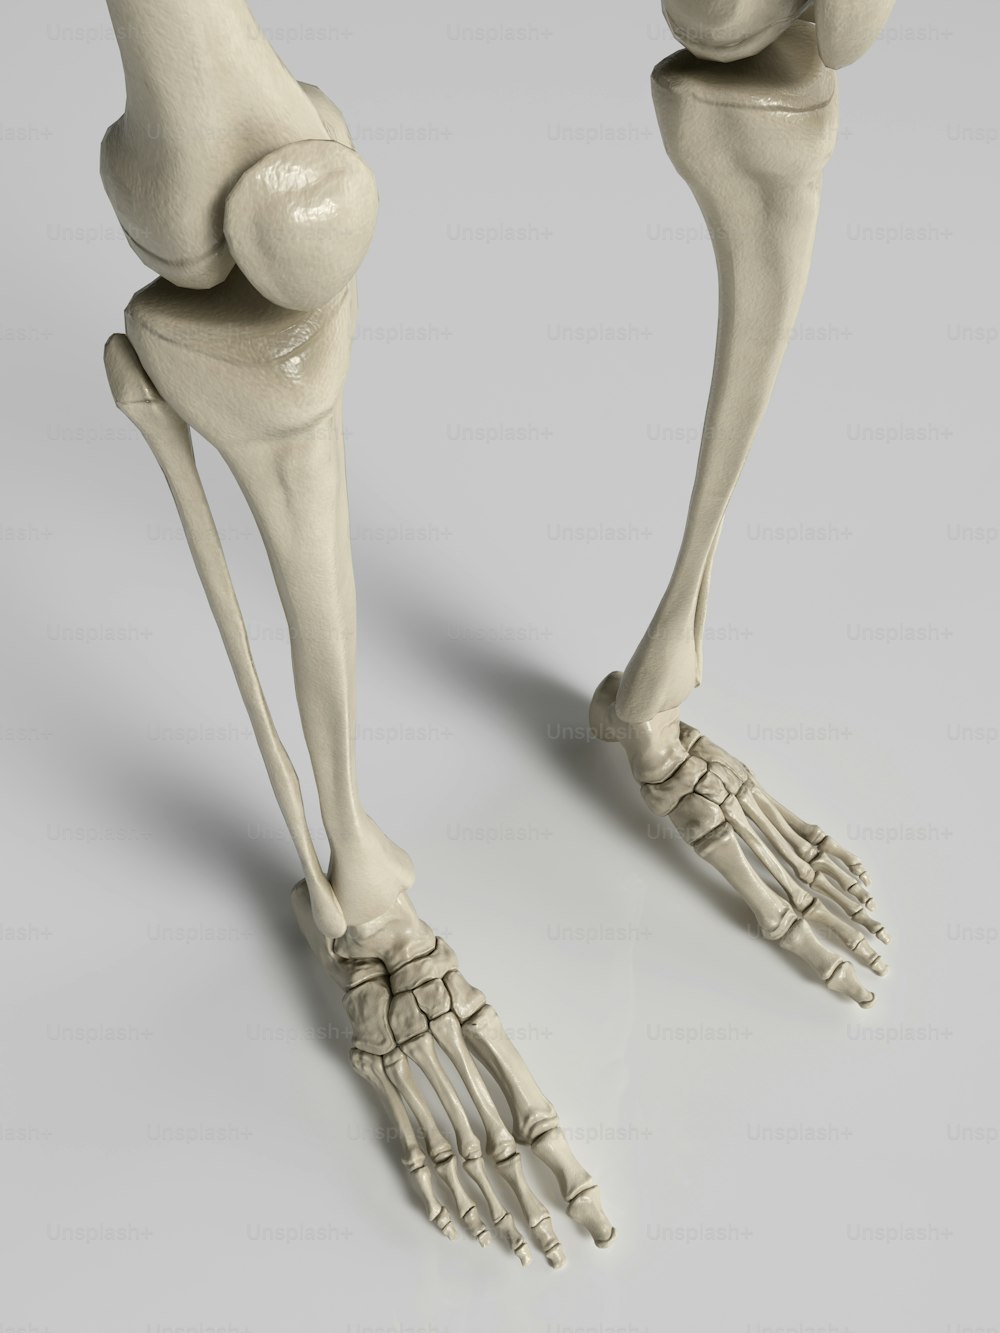 Ein 3D-Rendering eines menschlichen Beines und Fußes